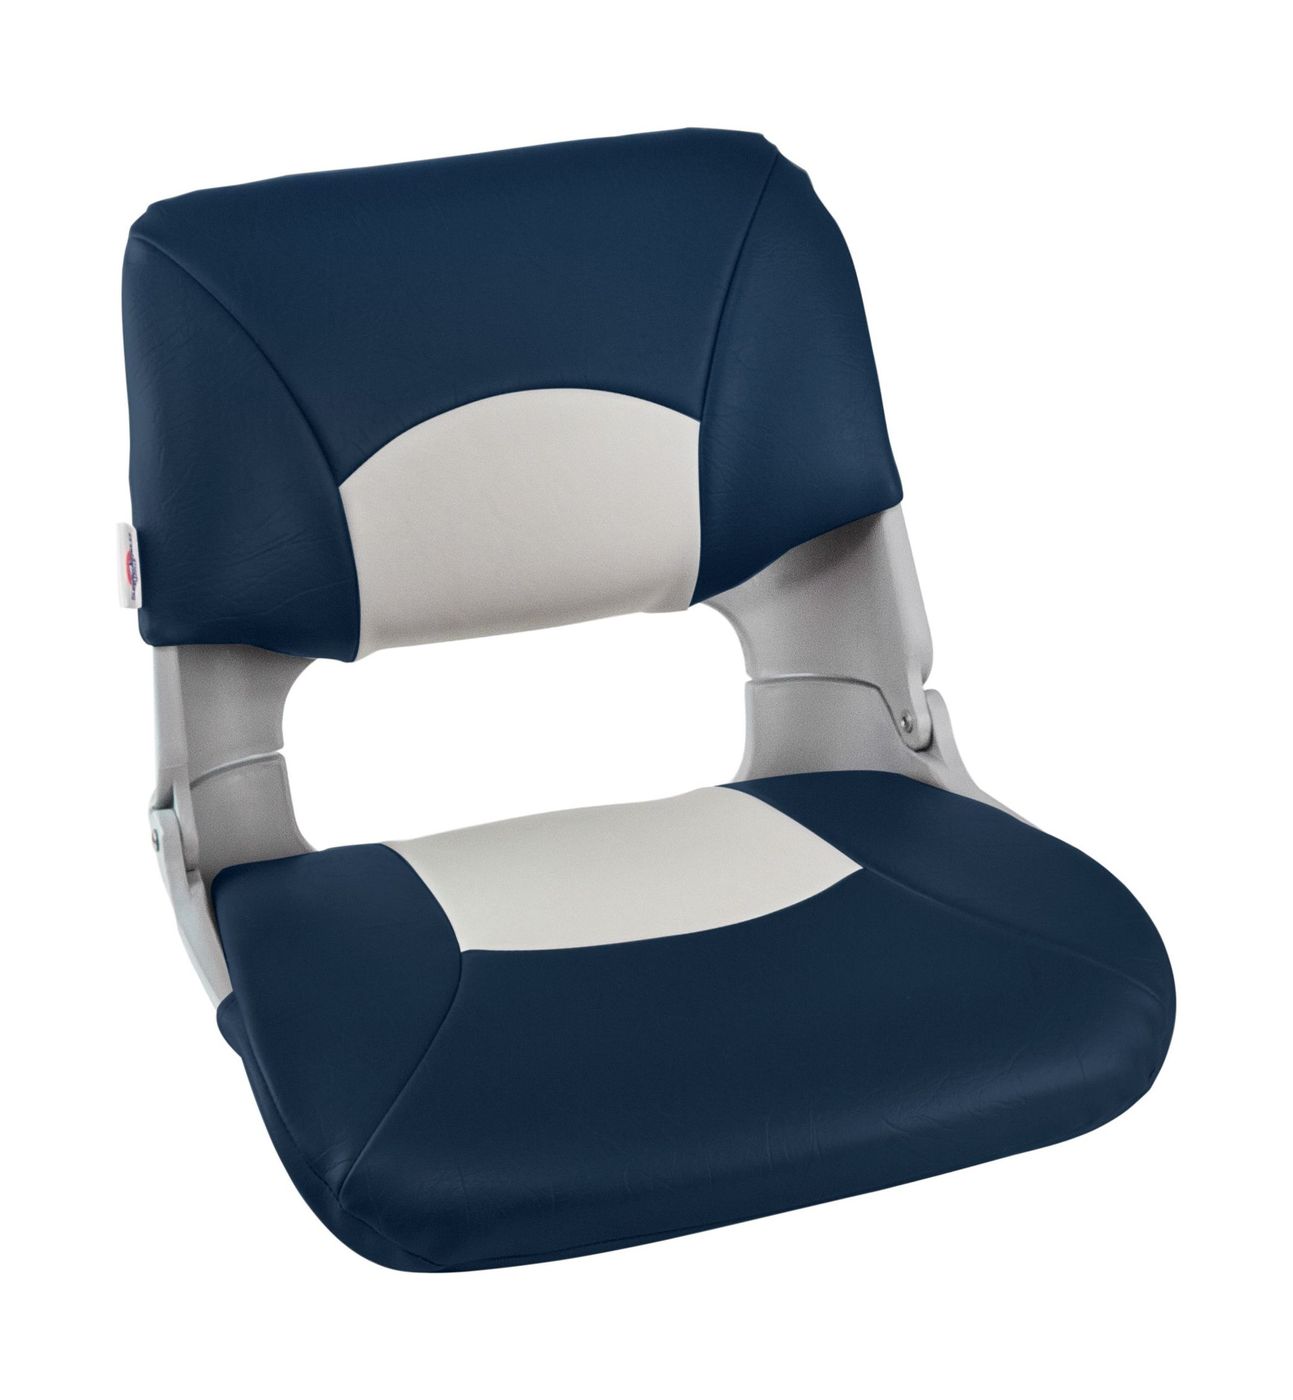 Кресло складное мягкое SKIPPER, цвет серый/синий 1061019 кресло мягкое deluxe sport с откидным валиком белый синий 1043251